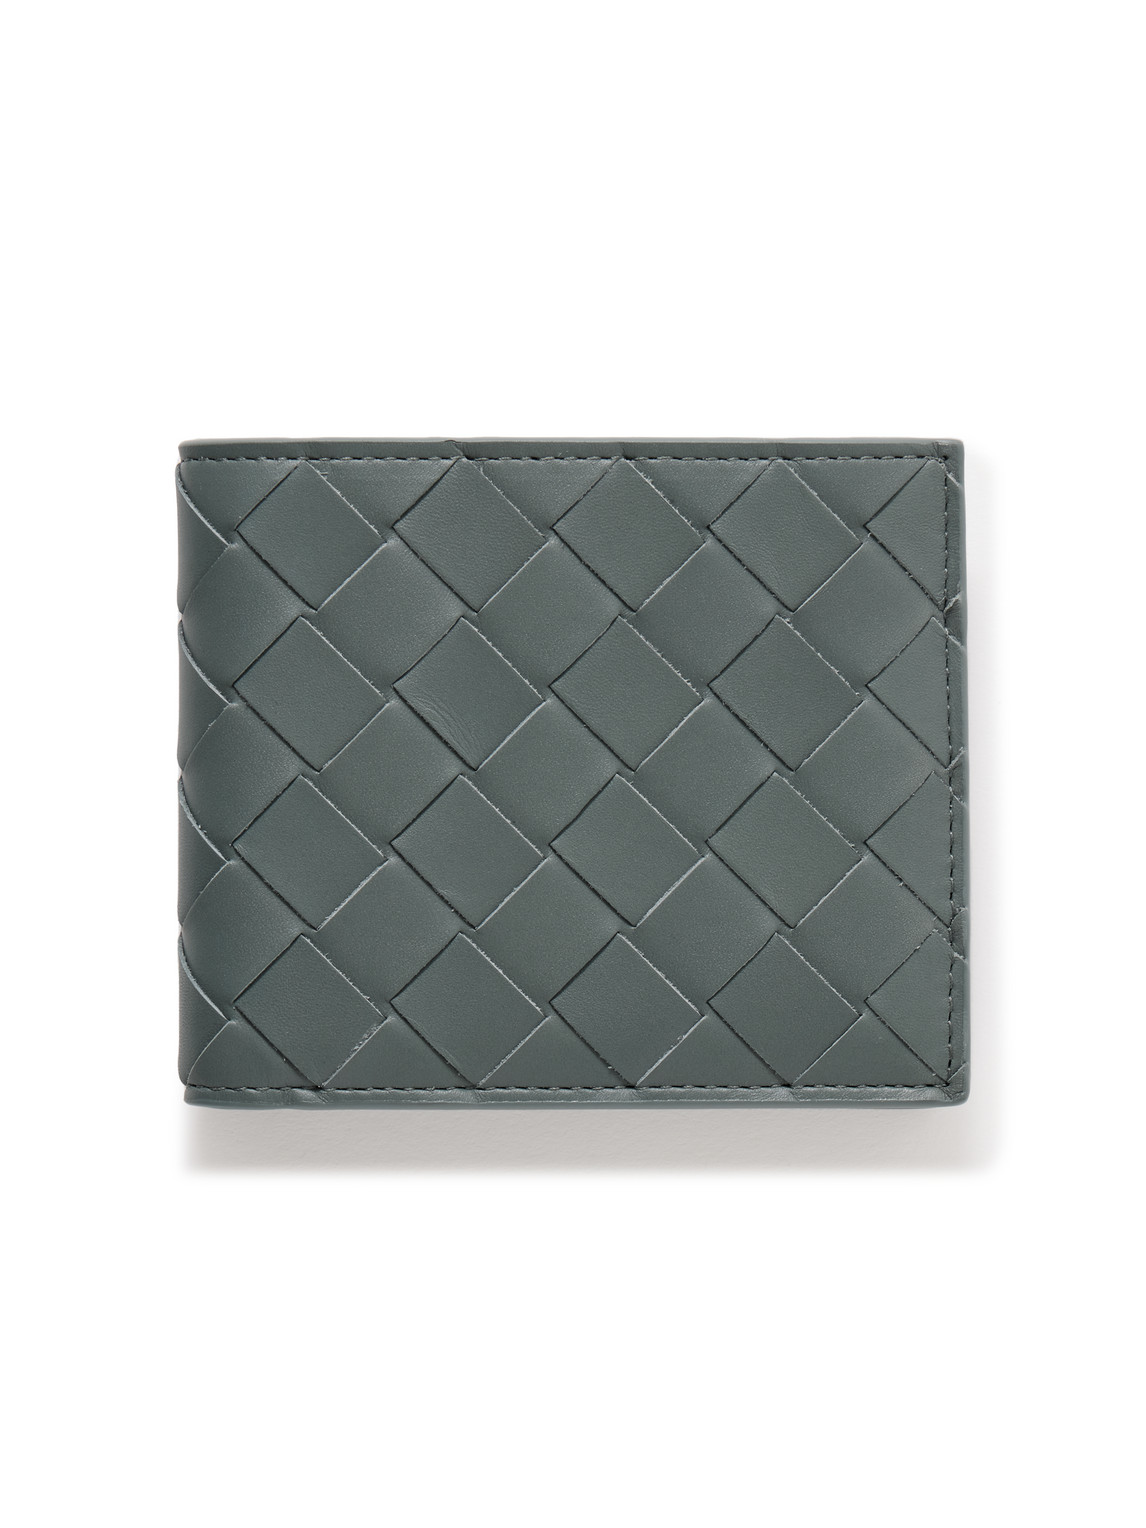 Bottega Veneta Intrecciato Leather Billfold Wallet In Grey